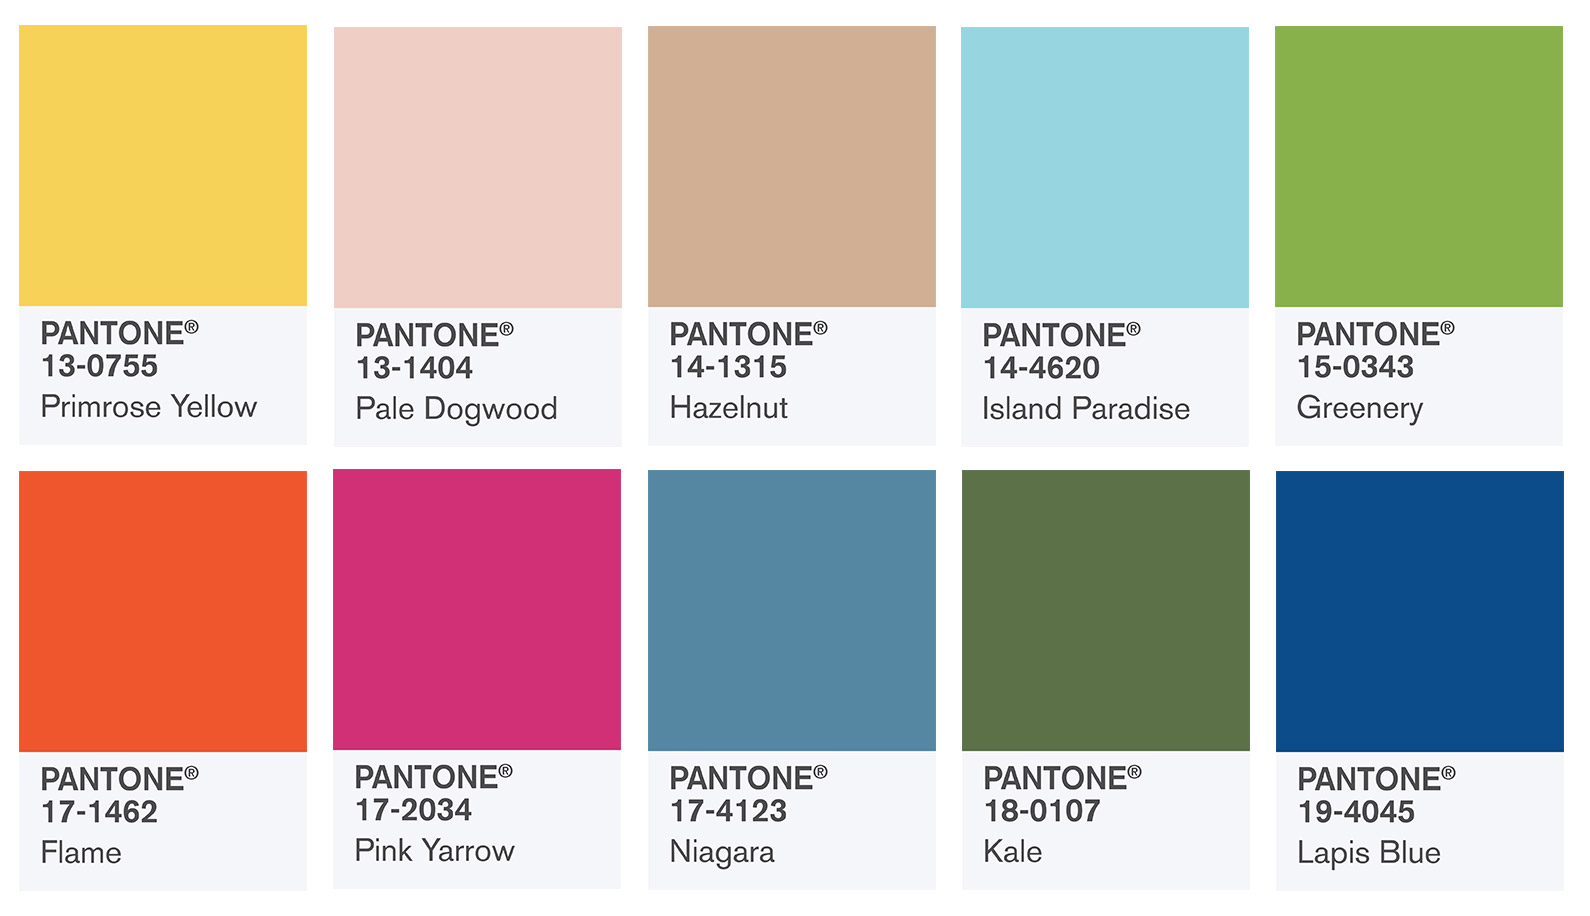 Los colores tendencia en 2017 según el Instituto Pantone